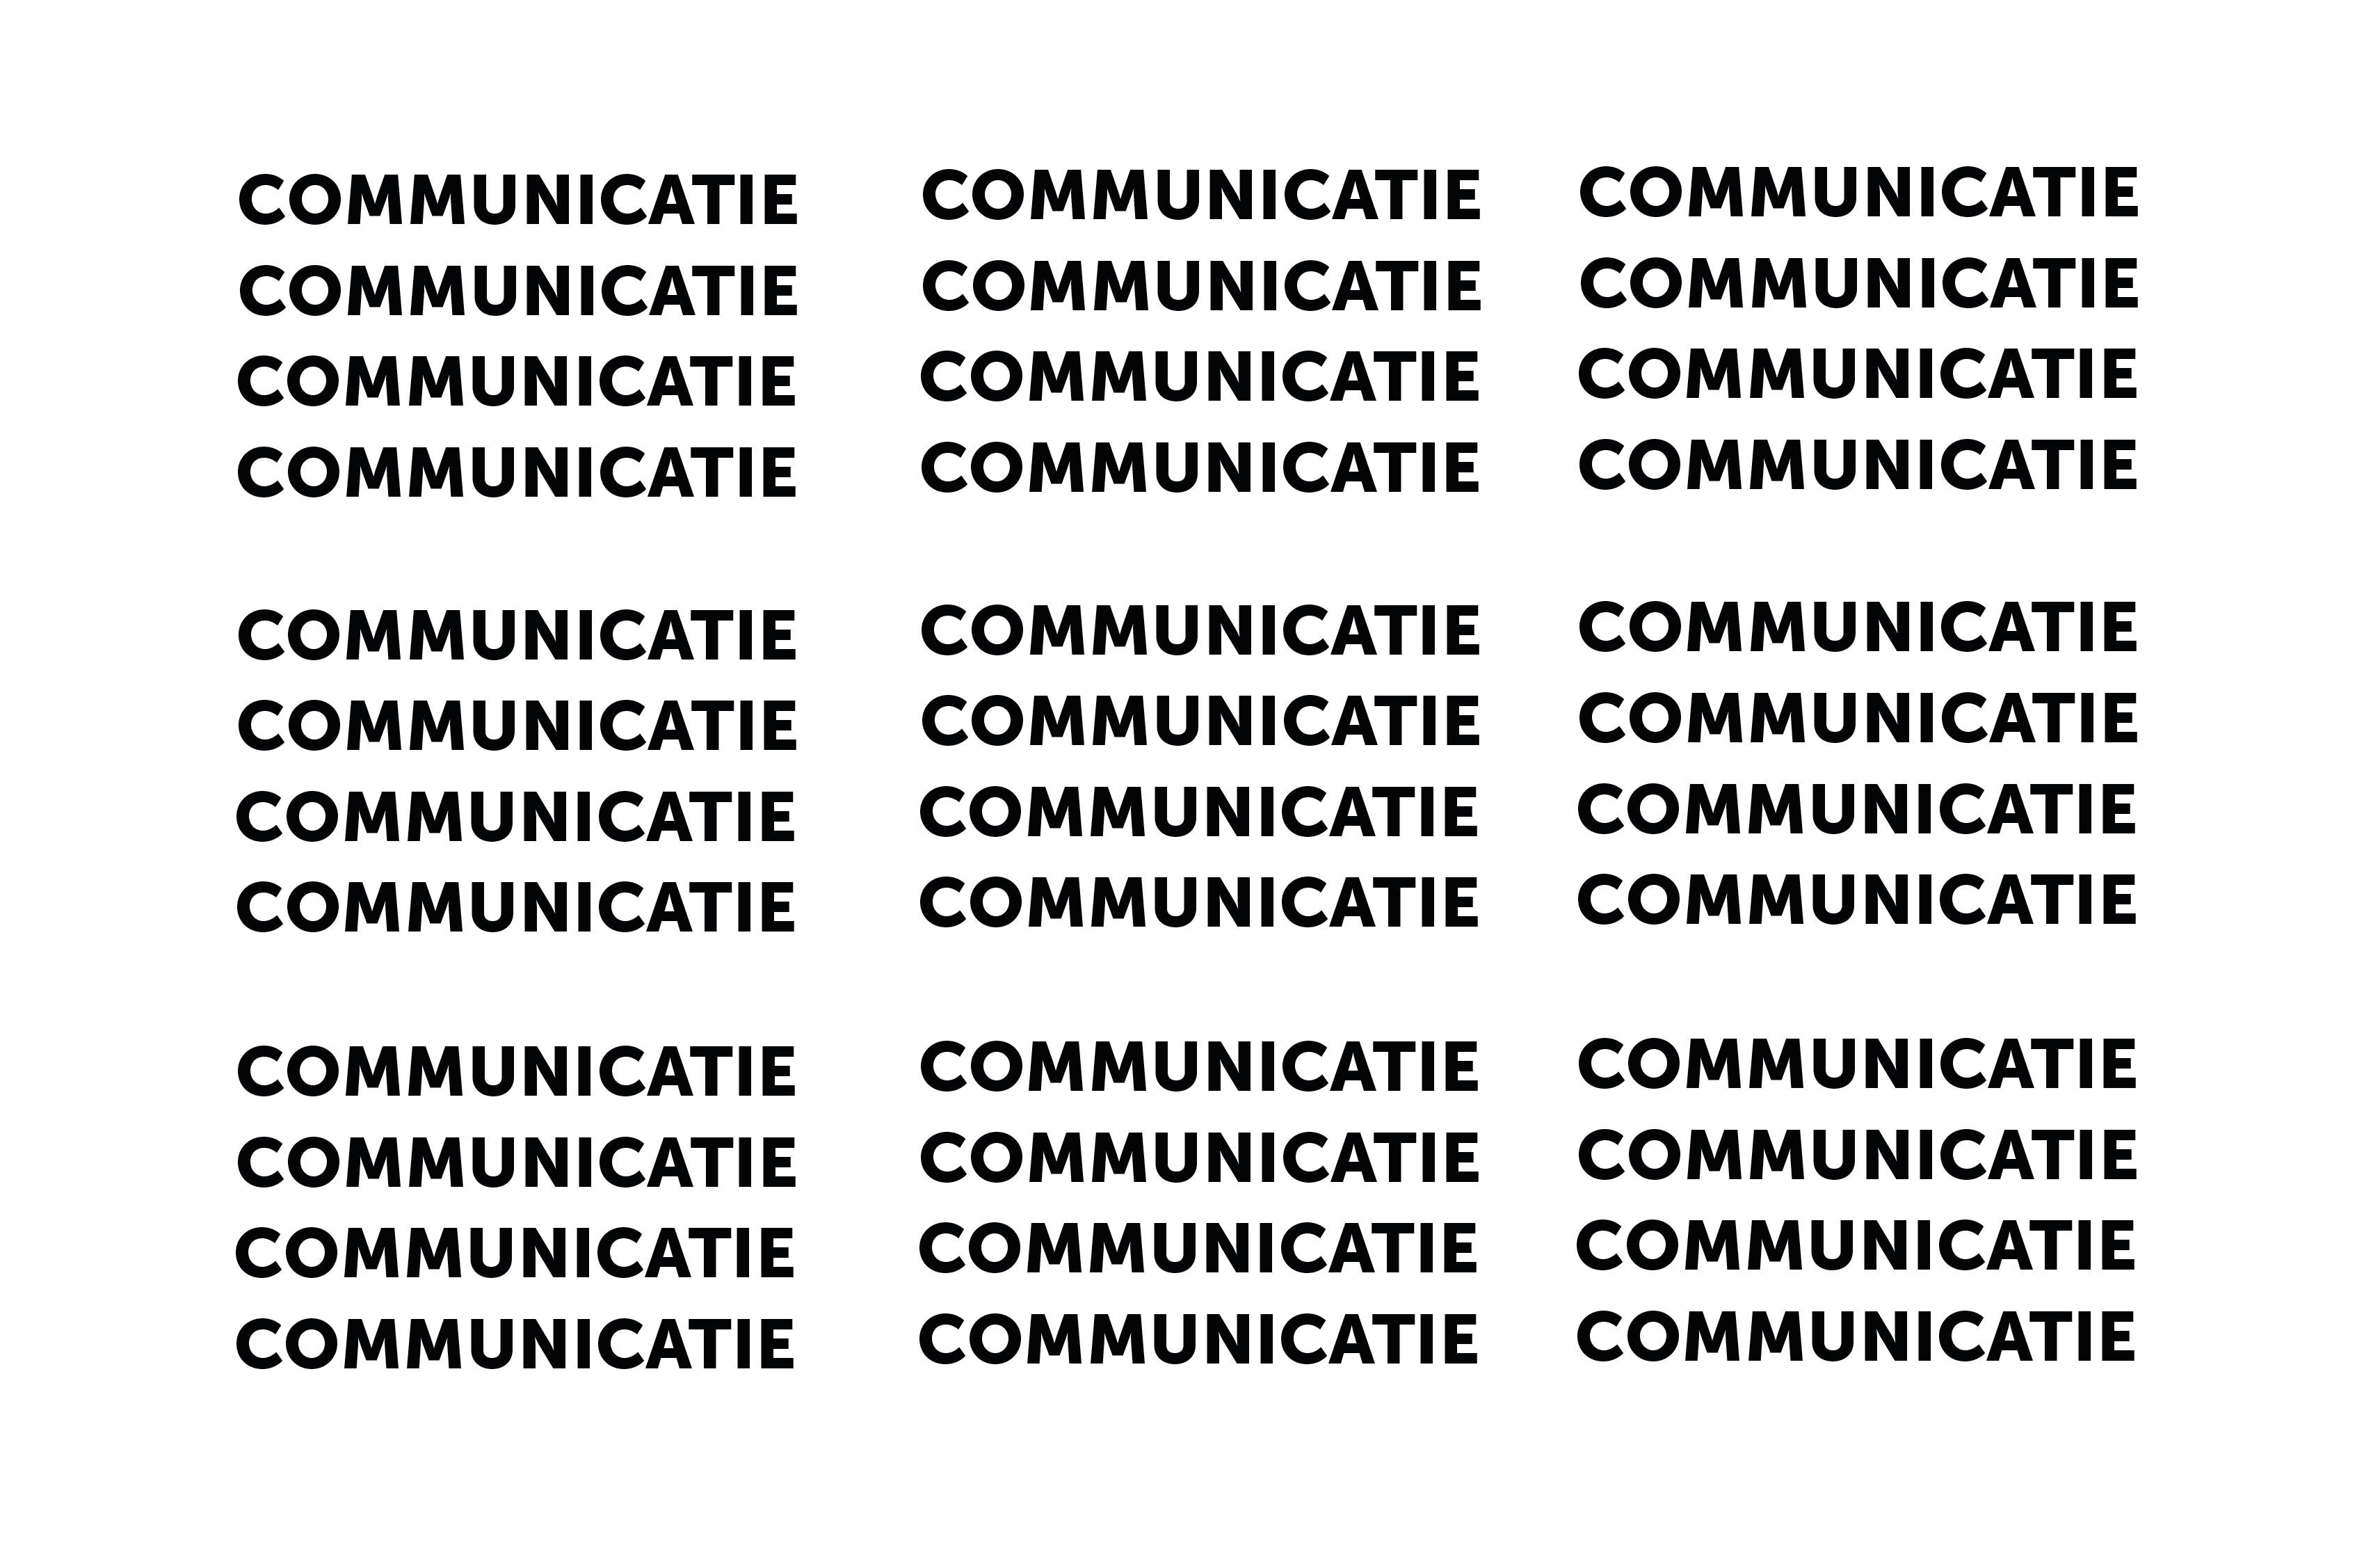 communicatie_Tekengebied 1